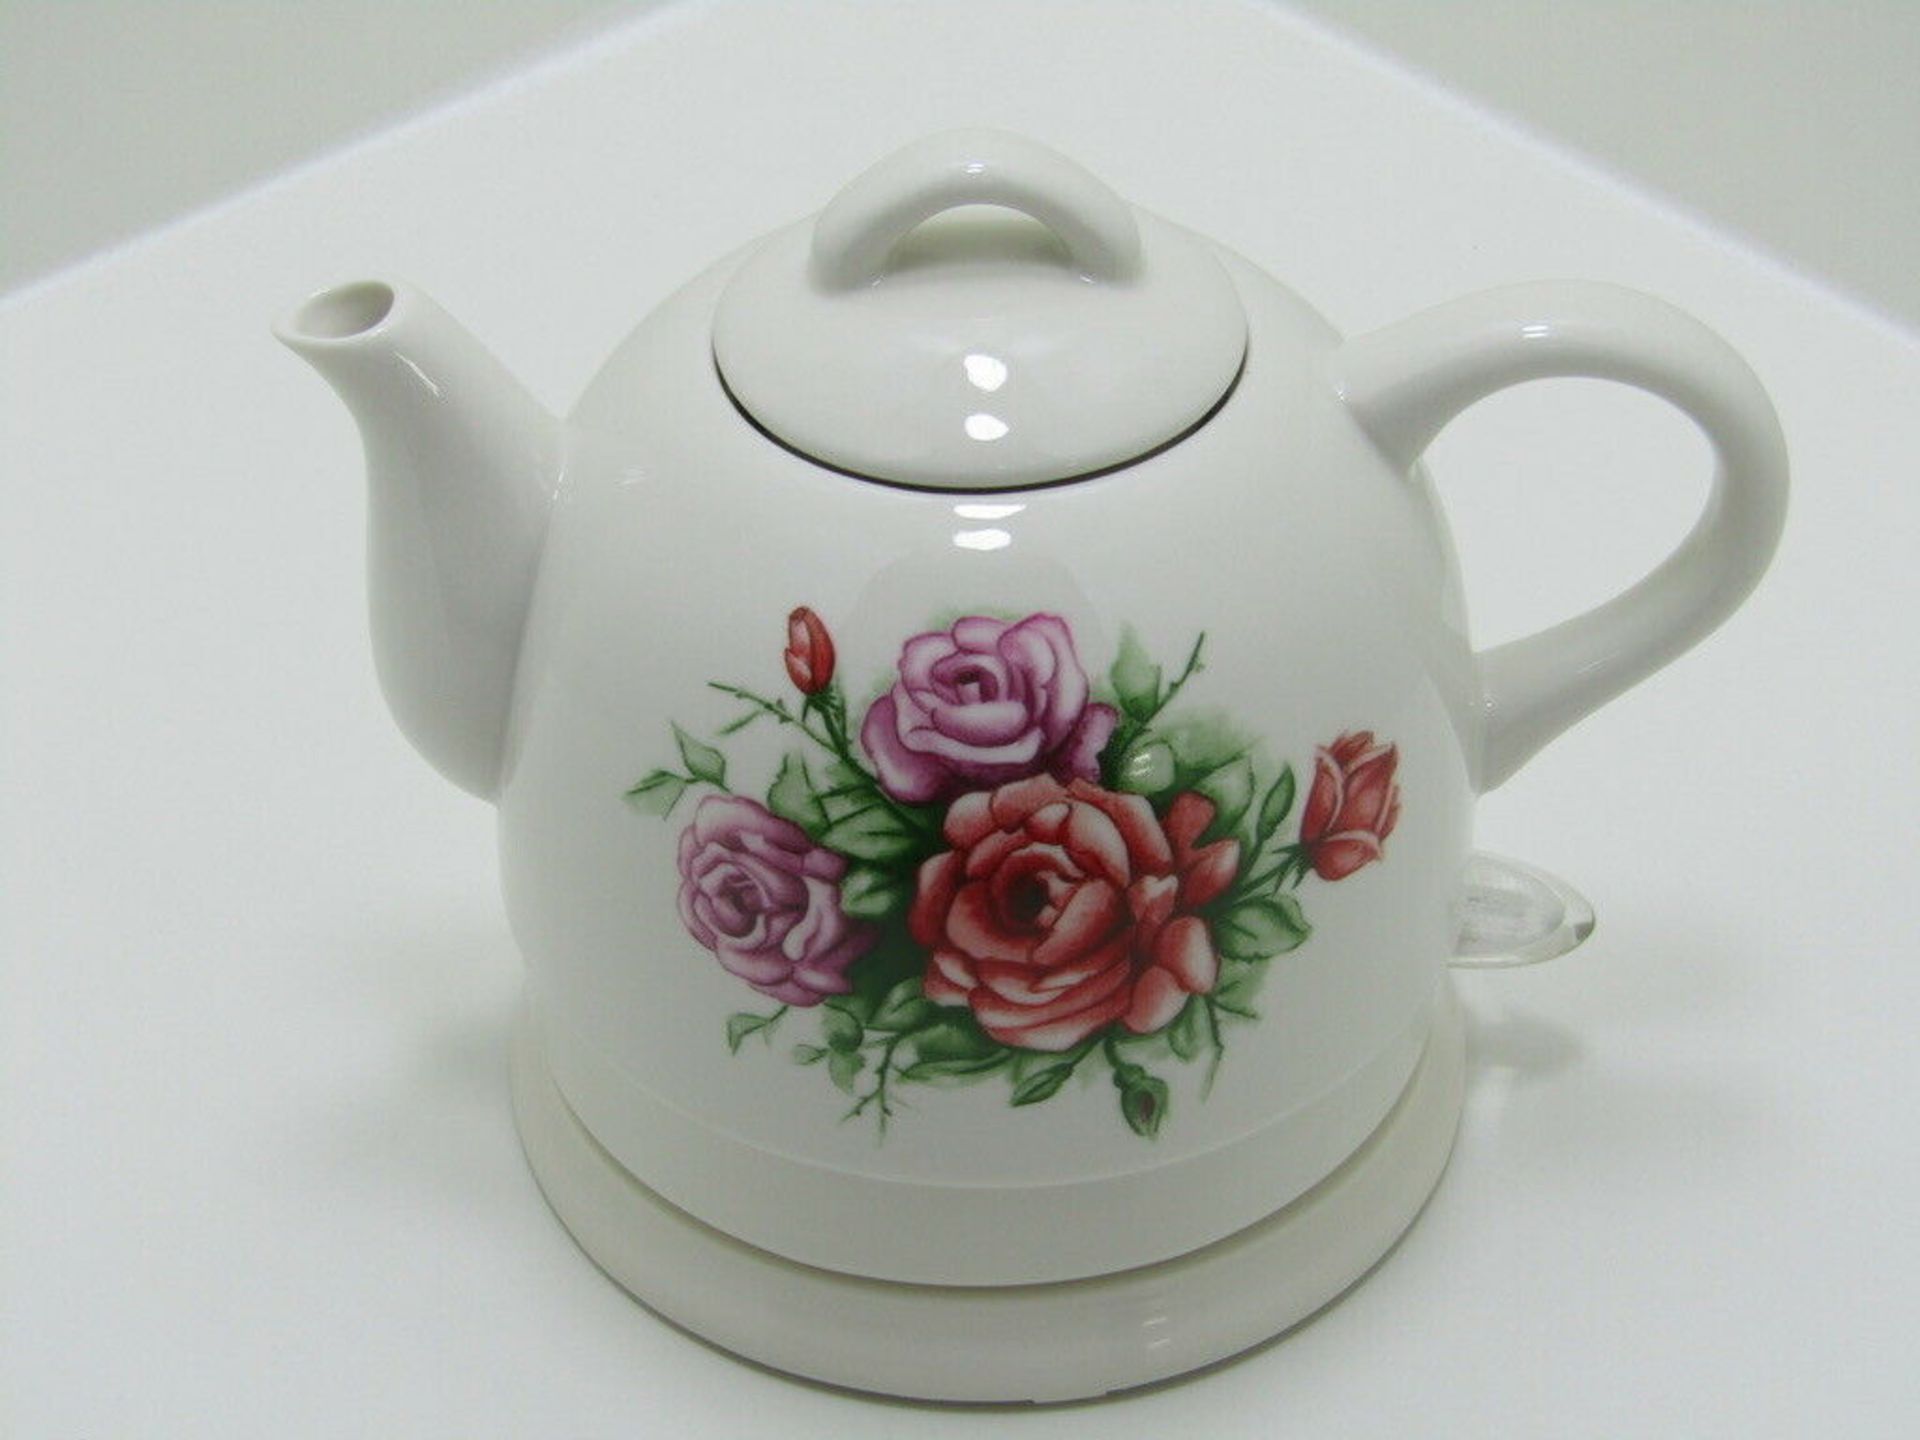 Country Rose Ceramic Kettle. White. Cordless. Tea Pot design. VJ905